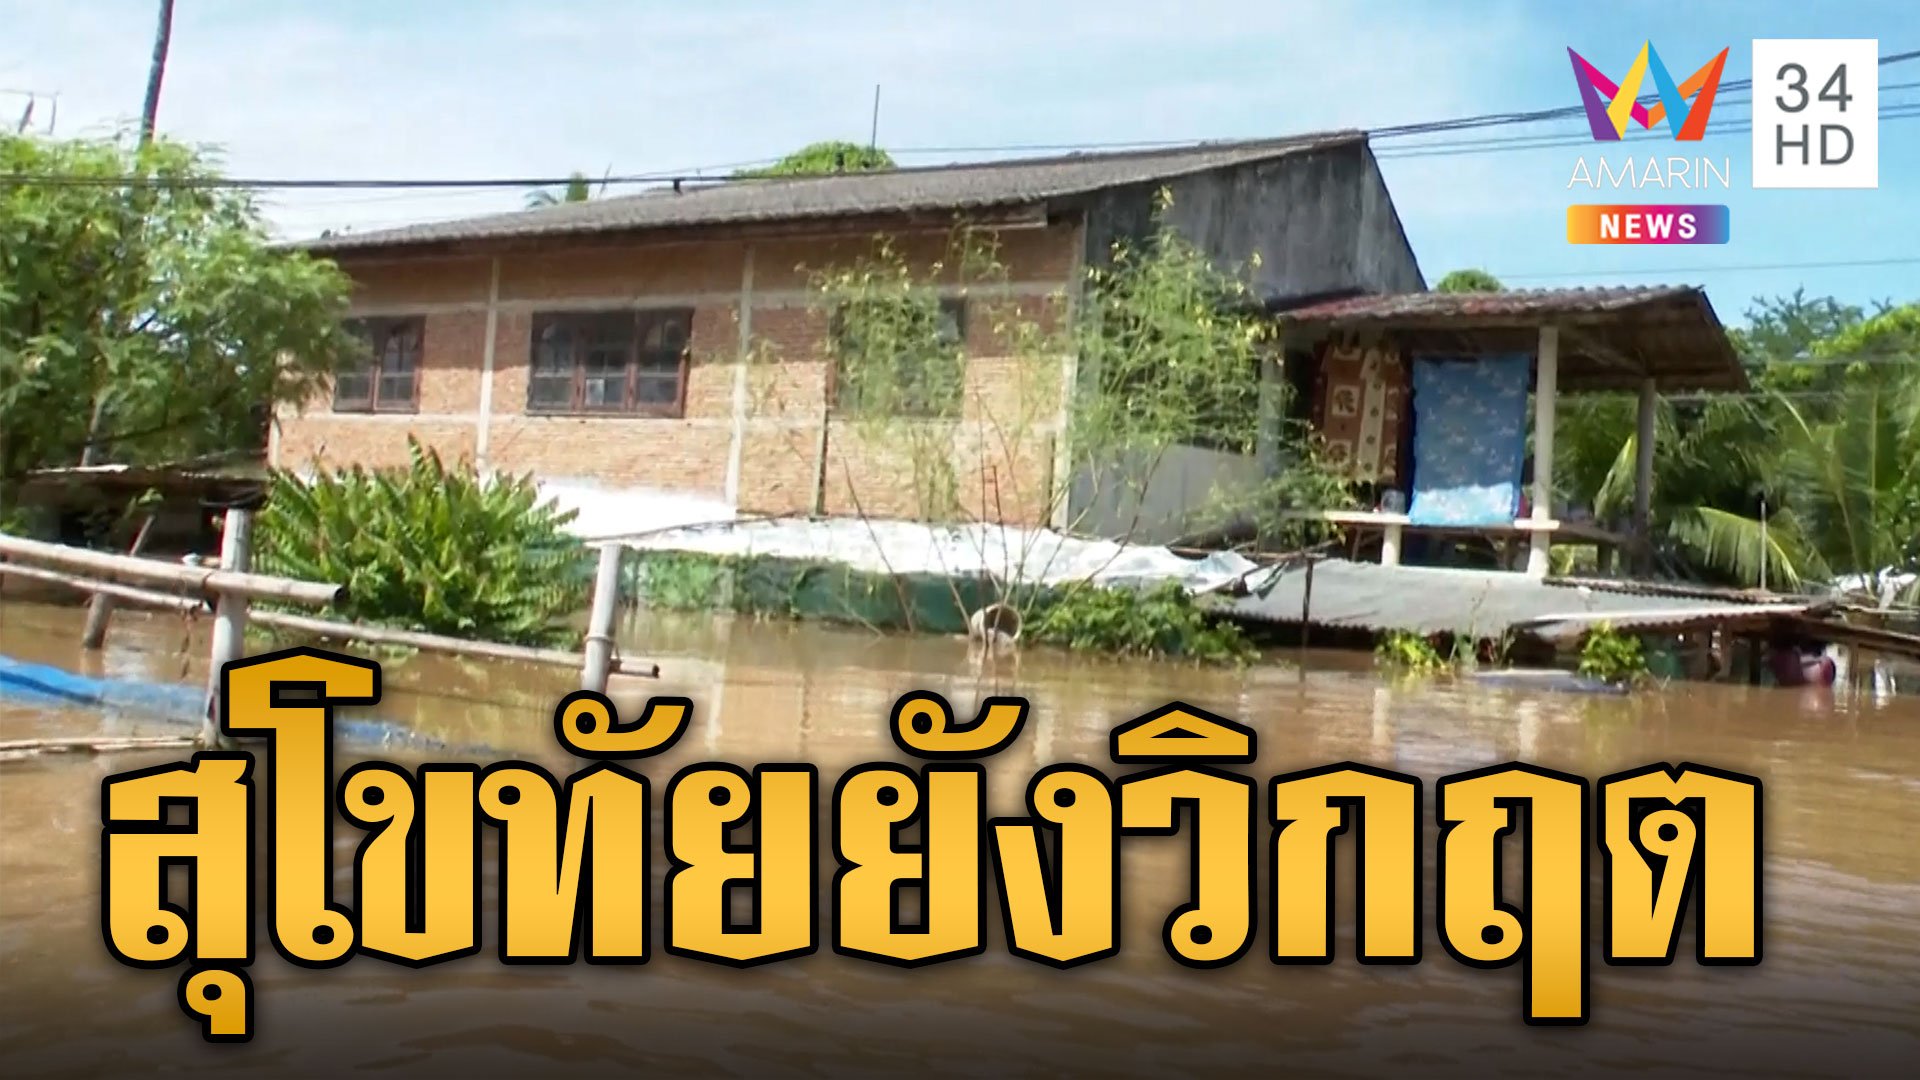 สุโขทัย ยังอ่วม! แม่น้ำยมทะลักต่อเนื่อง บ้านชั้นเดียวจมมิดหลังคา  | ข่าวเที่ยงอมรินทร์ | 3 ต.ค. 66 | AMARIN TVHD34